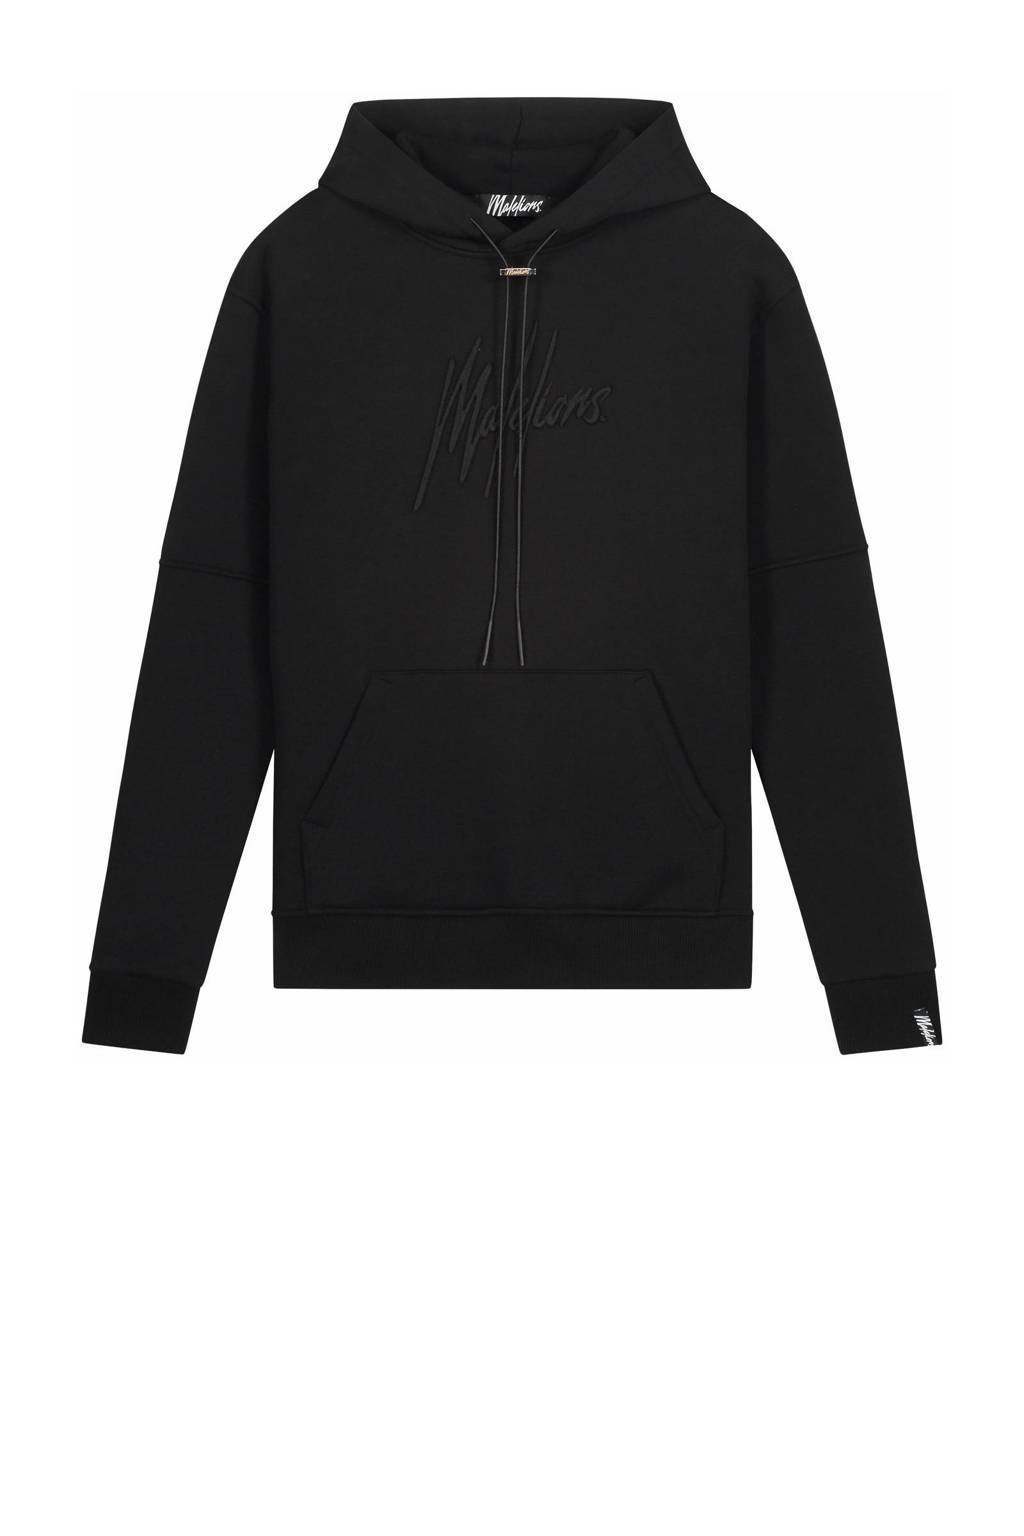 Malelions hoodie met logo black